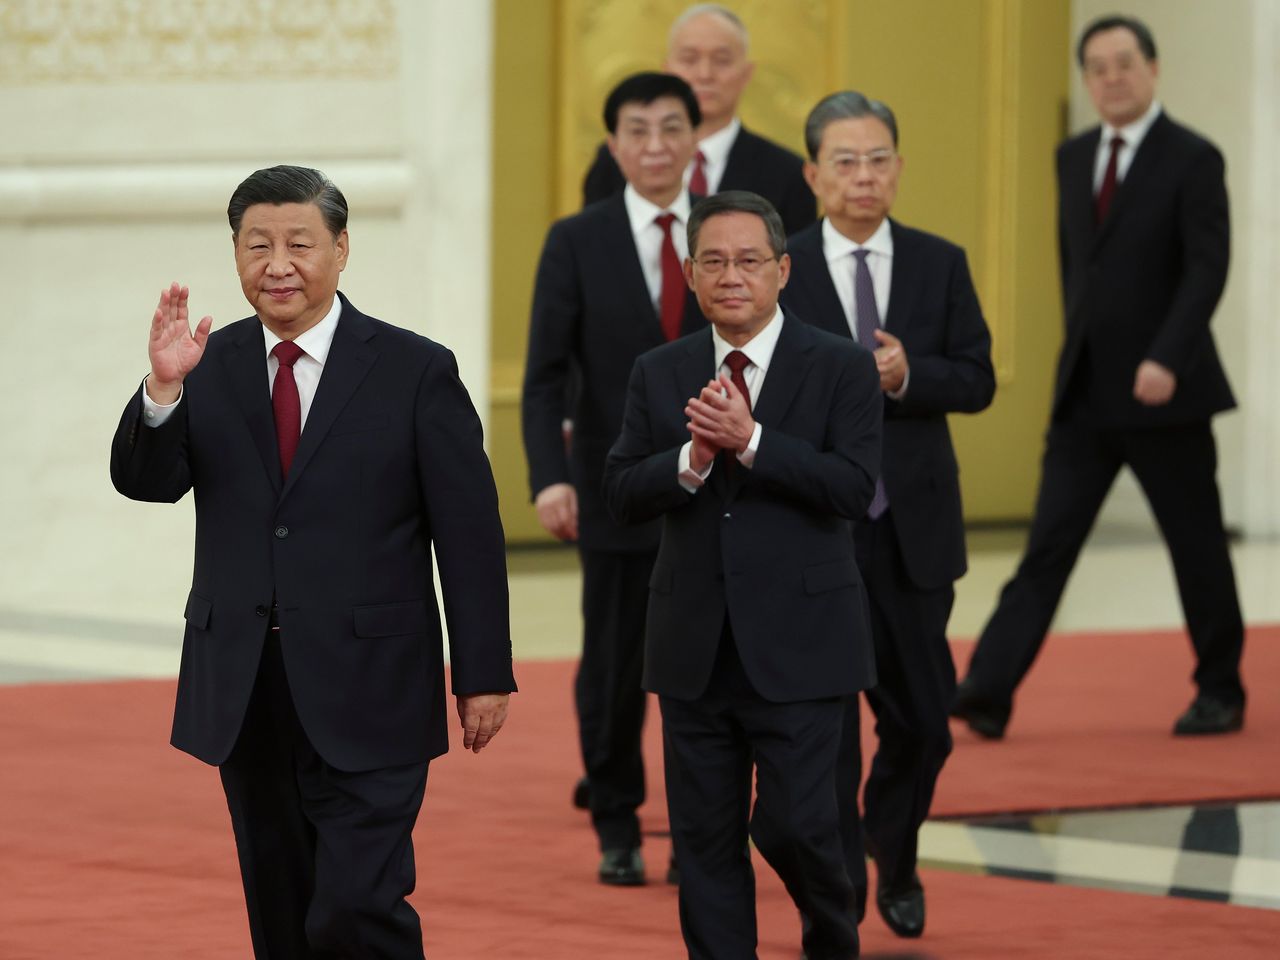 Chine : ça s’agite, le chef de la diplomatie viré 6 mois après sa nomination